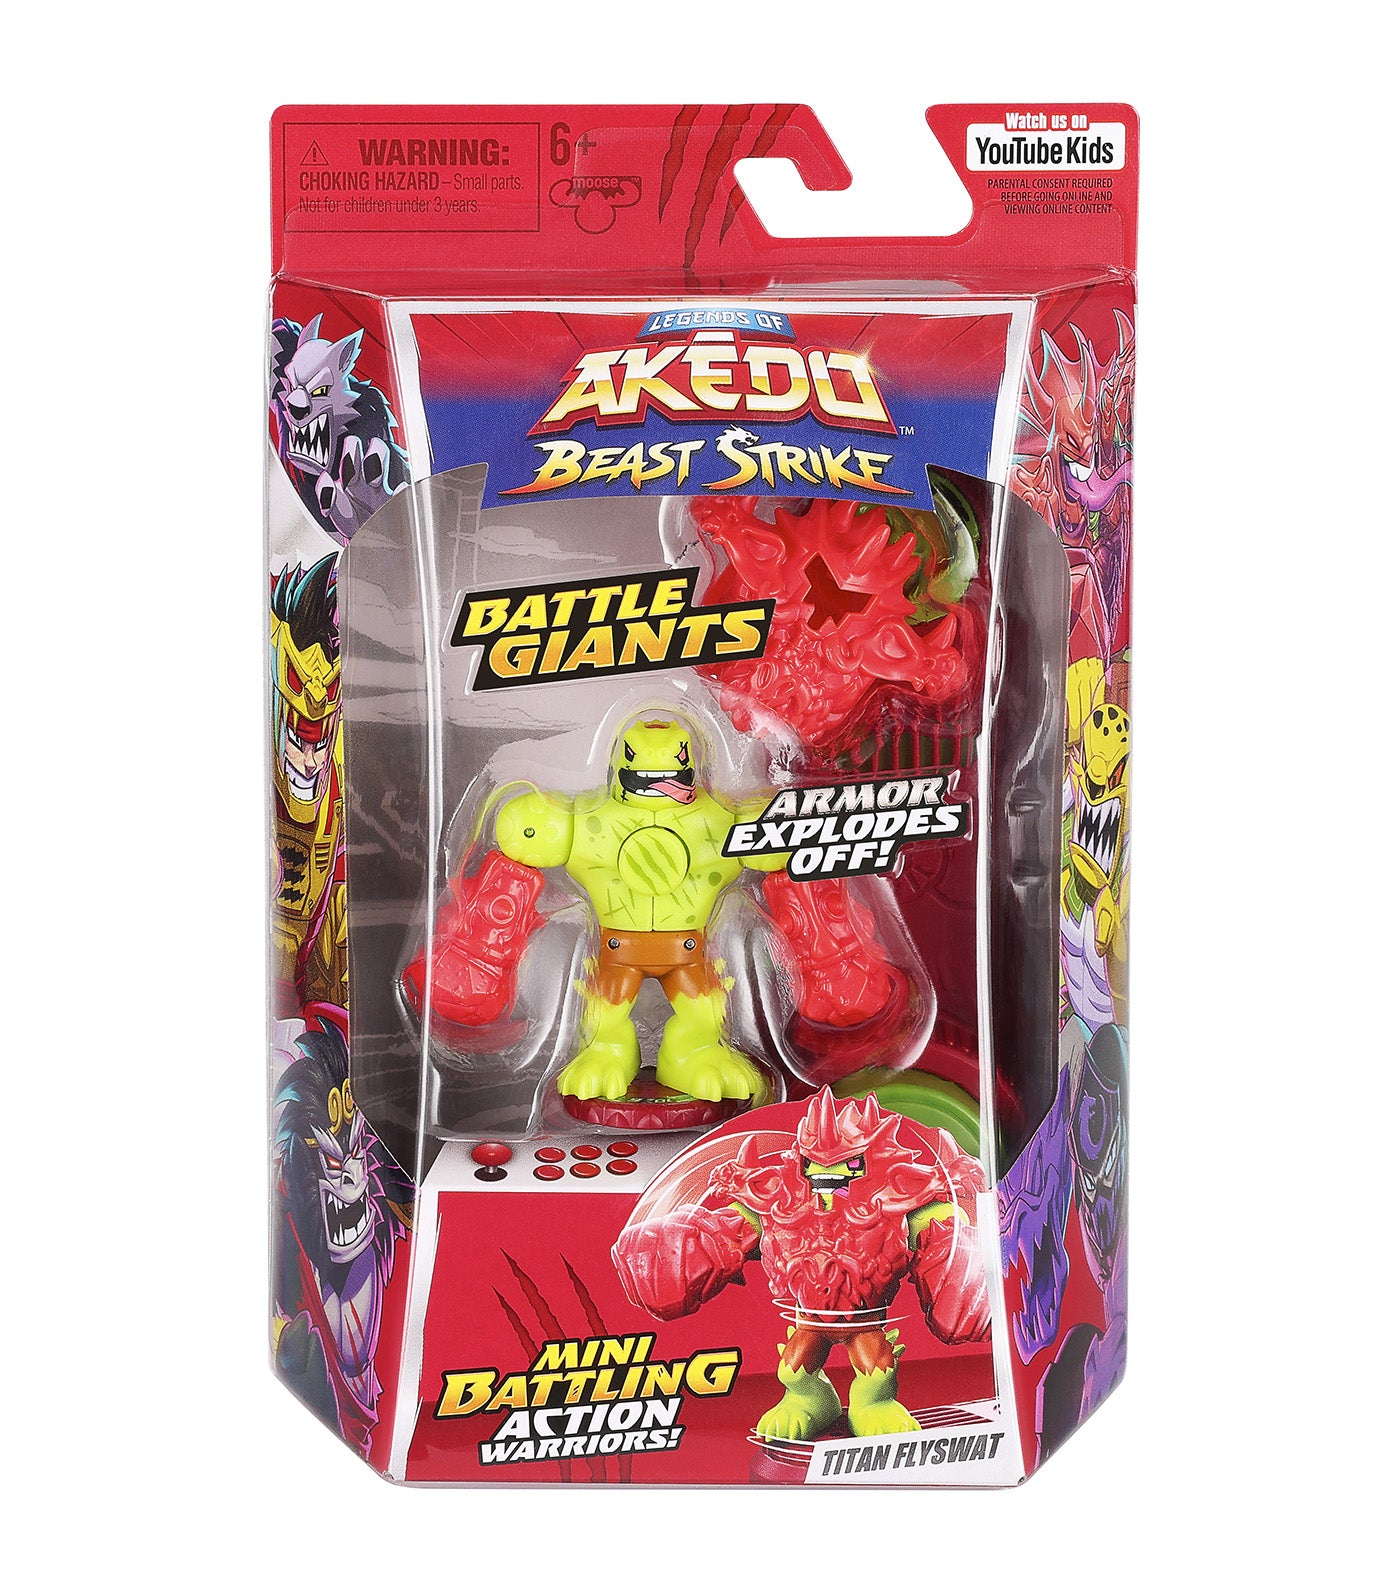 Legends of Akedo Beast Strike Battle Giants Single Pack - Titan Flyswat